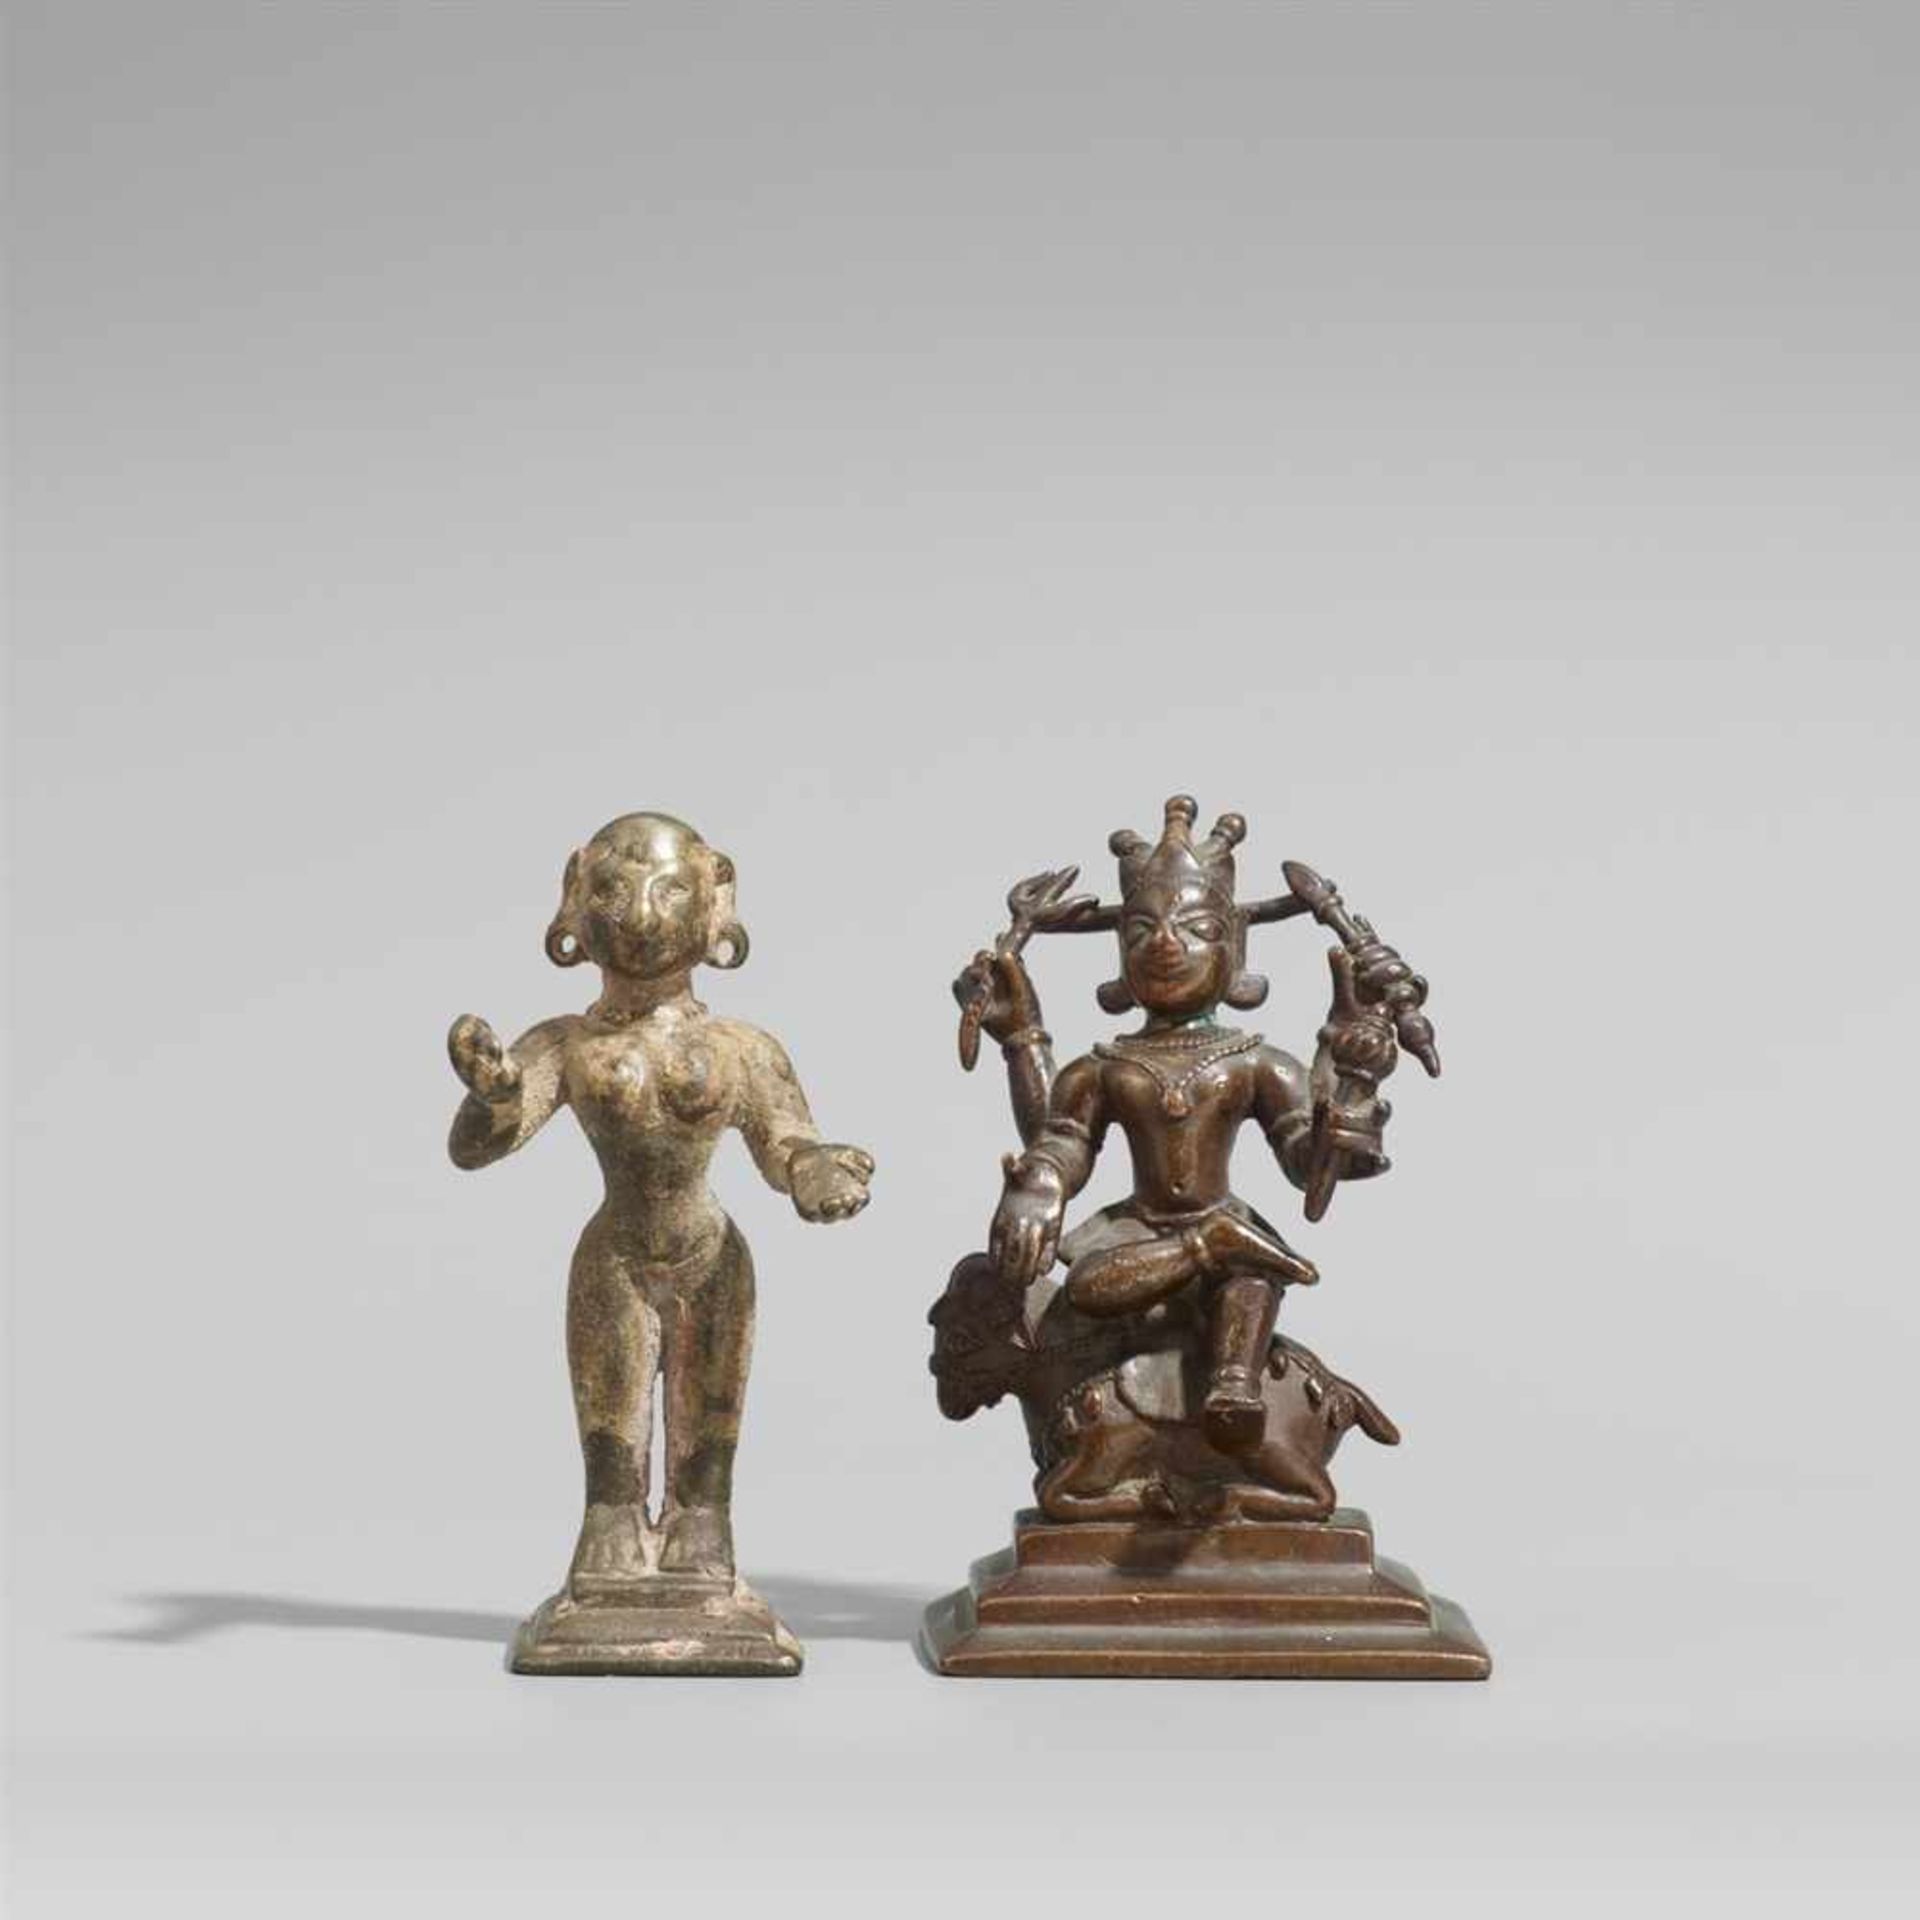 Männliche vierarmige Gottheit auf einem Stier und eine weitere Figur. Bronze. Ostindien. 17./19. Jh. - Bild 2 aus 3